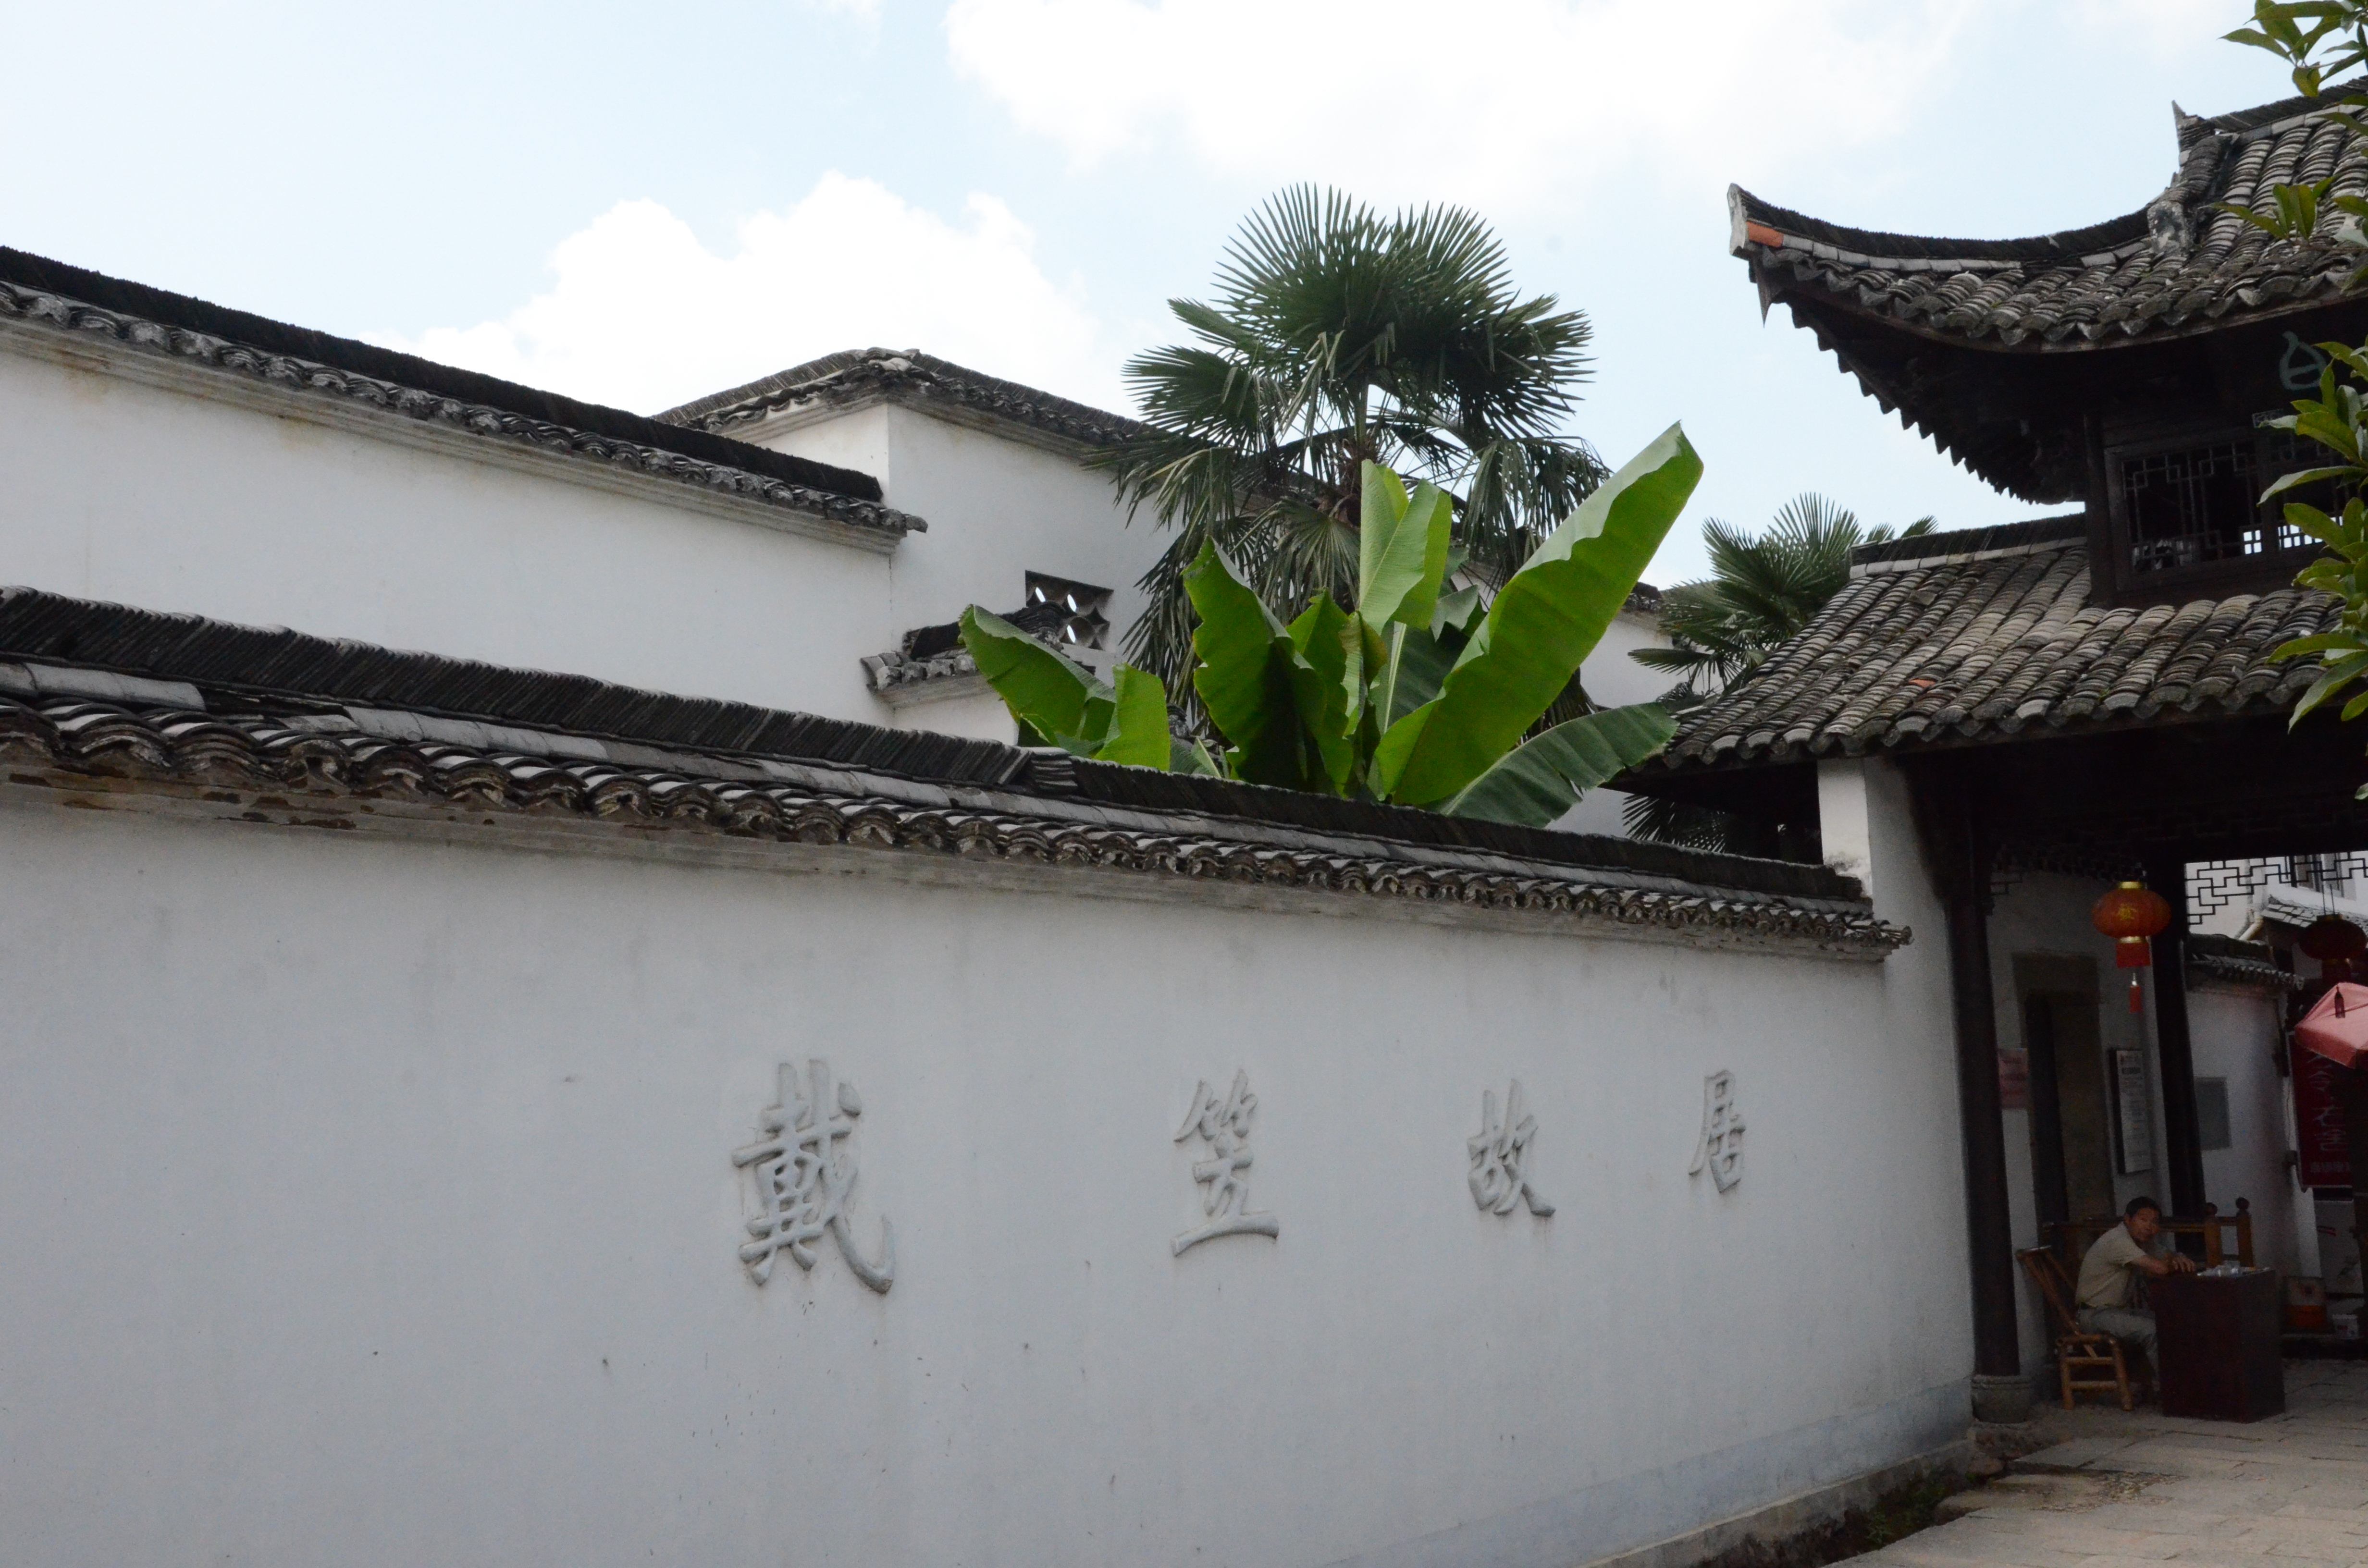 戴笠故居在浙江省江山市保安乡,现在是一个旅游景点